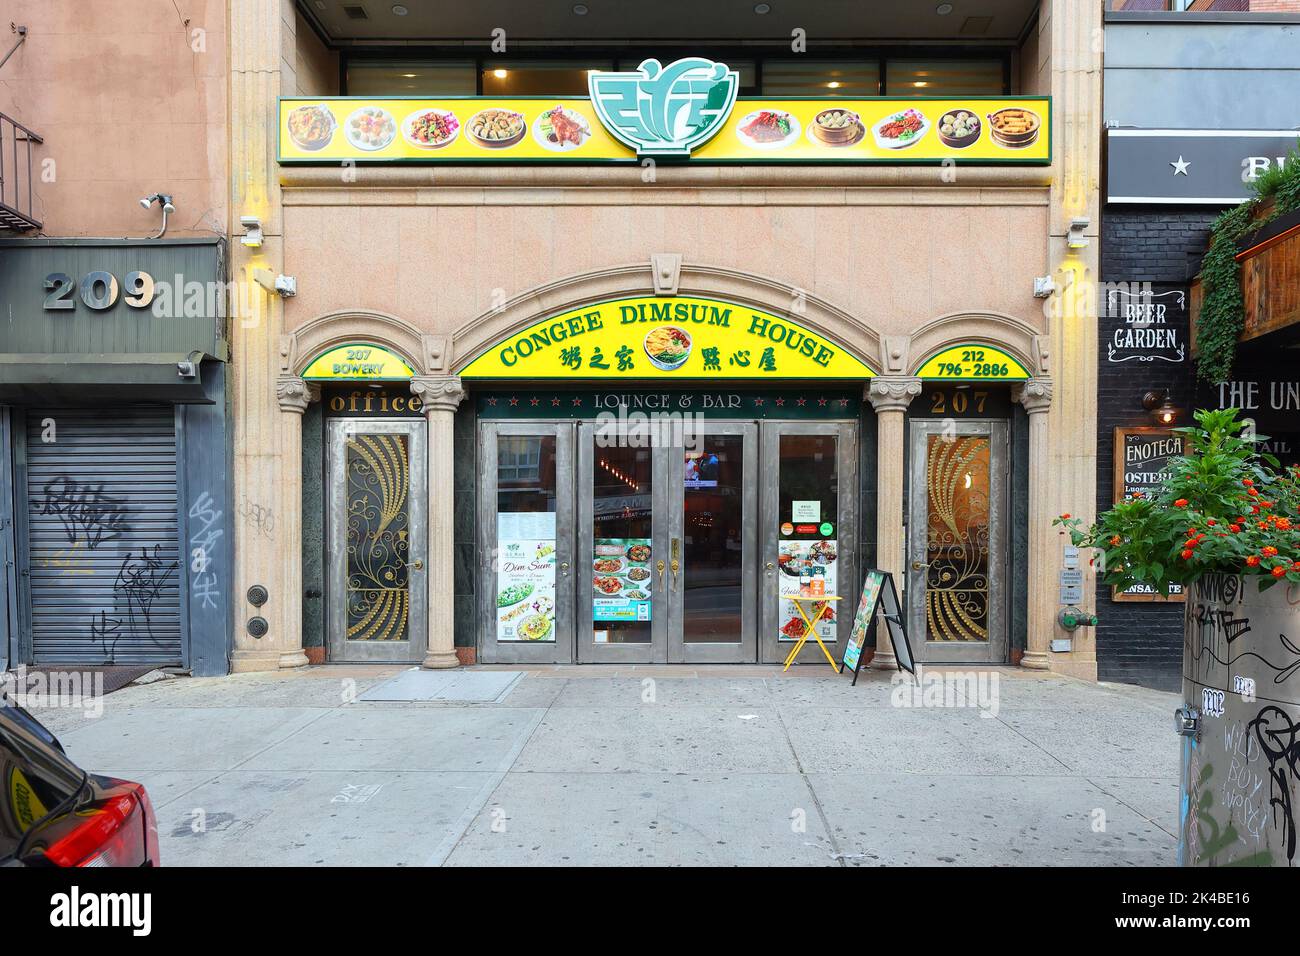 Congee Dimsum House, 207 Bowery, New York, New York, New York, boutique en ligne photo d'un restaurant chinois dans le Lower East Side de Manhattan. Banque D'Images